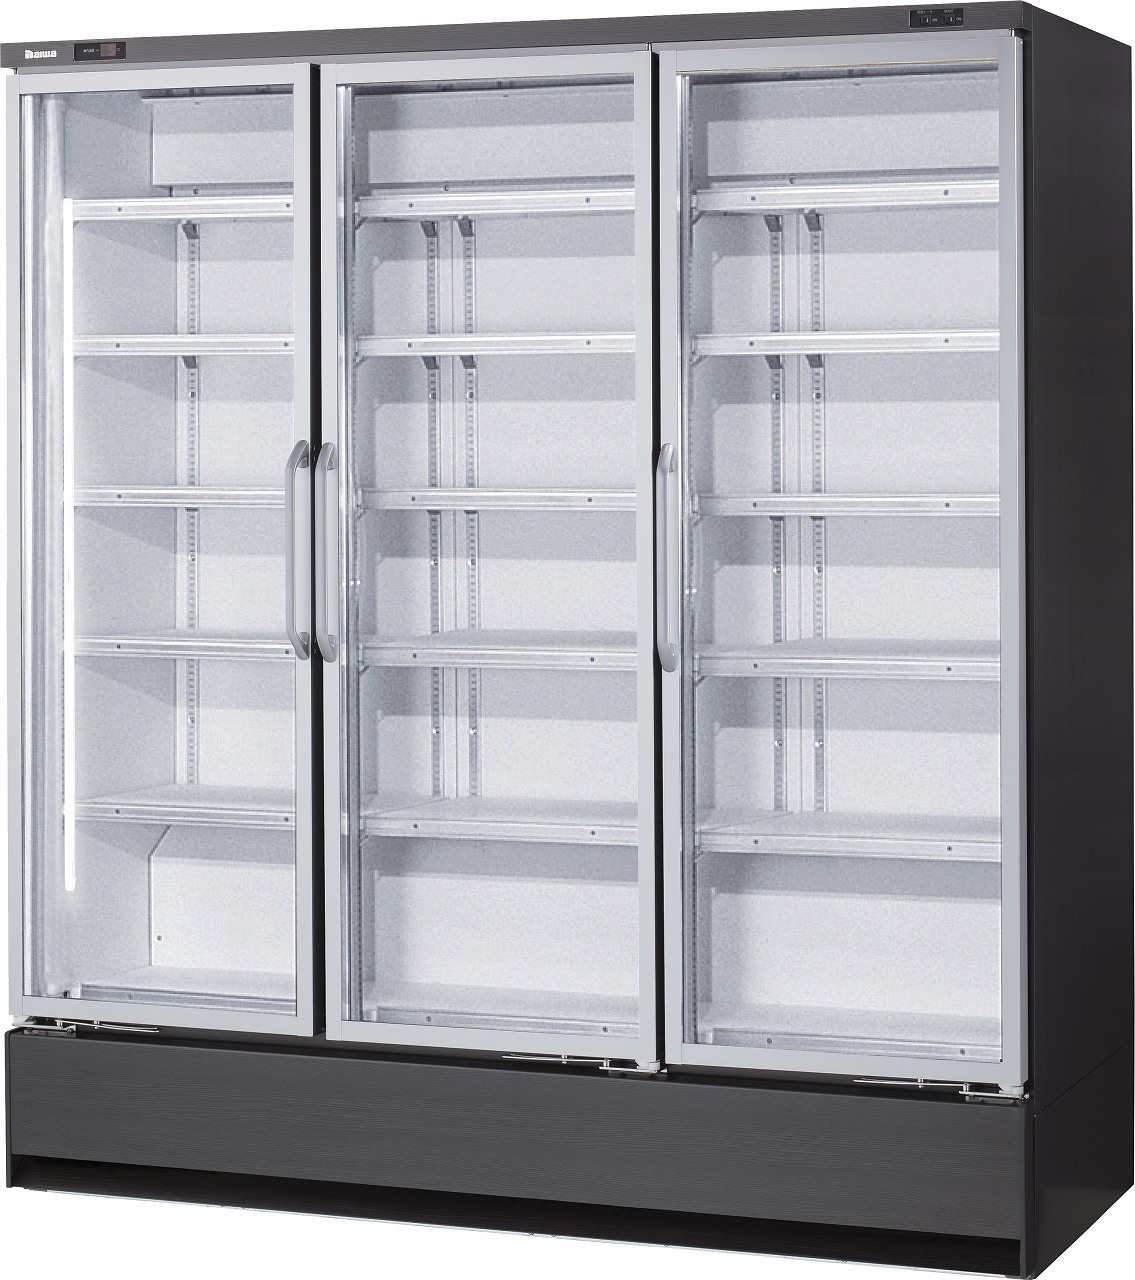 下置型]インバータ制御冷凍・冷蔵ショーケース エコ蔵くん | 店舗用冷凍・冷蔵ショーケース | 製品情報 | 大和冷機工業株式会社